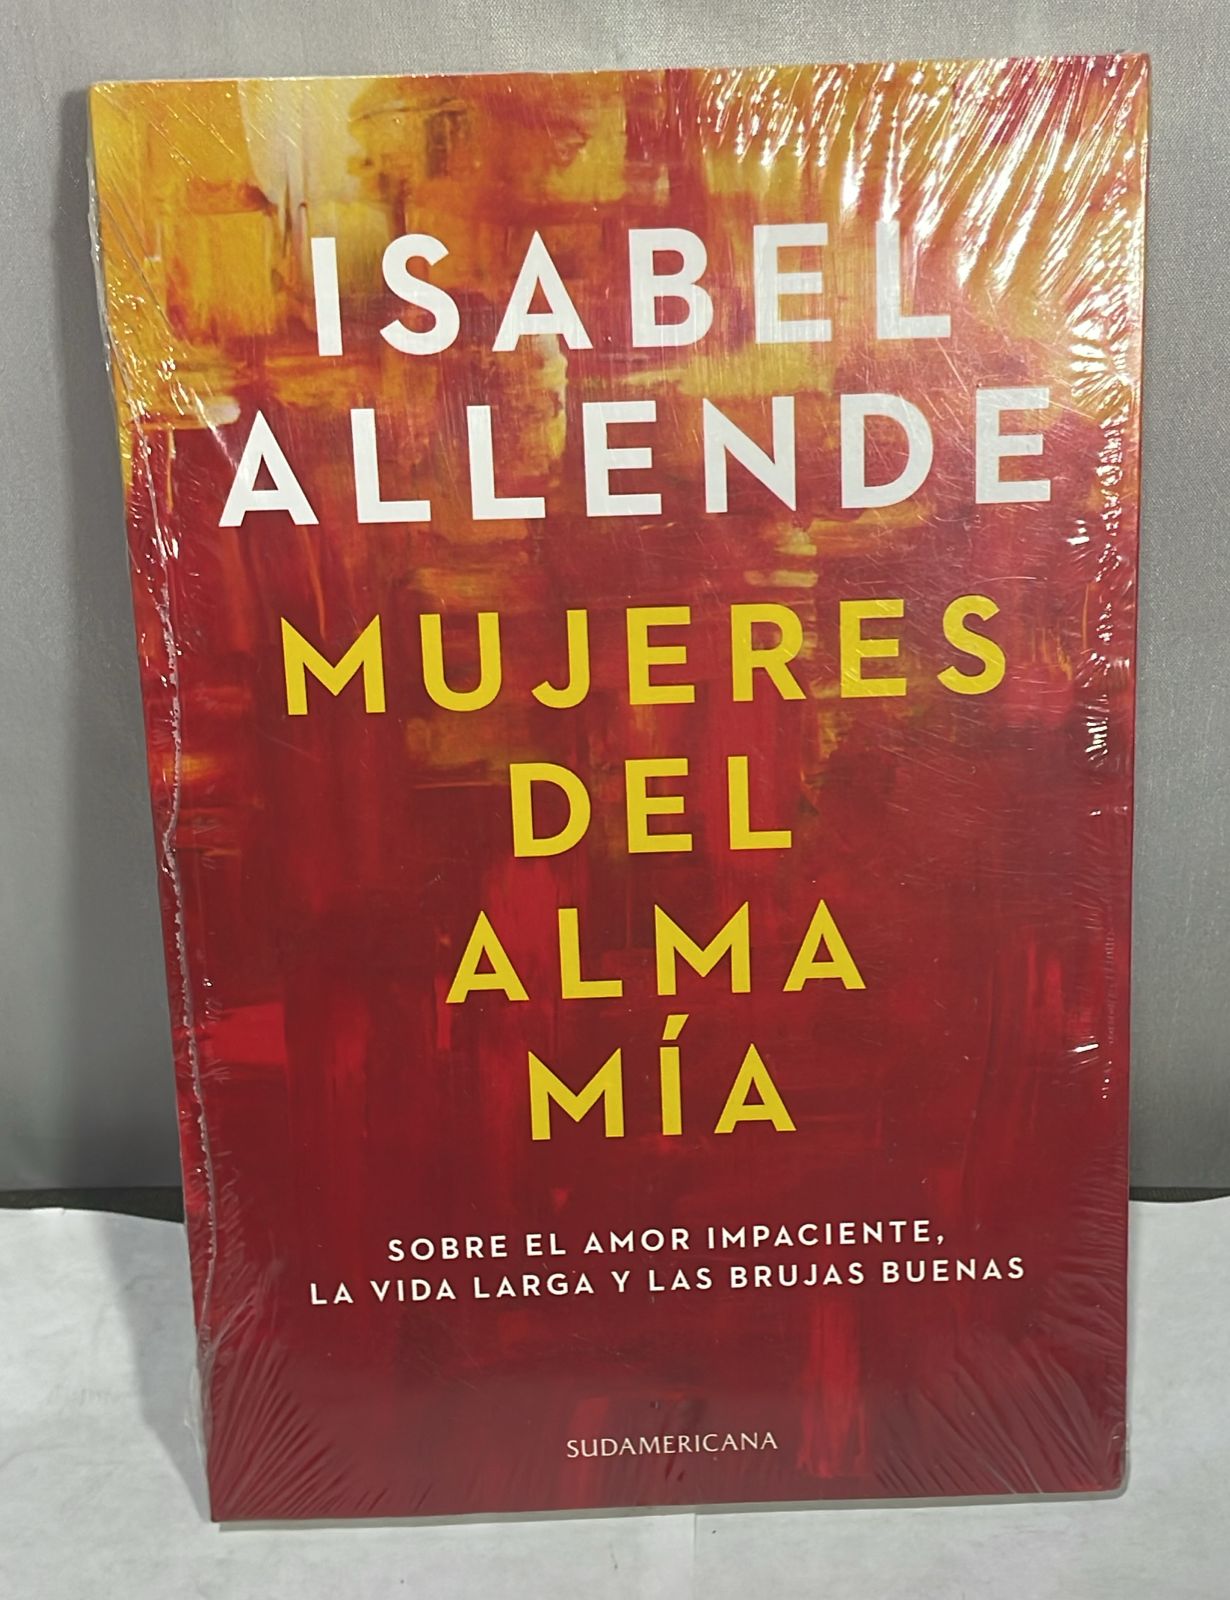 Libro Sudamerica Mujeres Del Alma Mia Isabel Allende [Openbox] [Est]